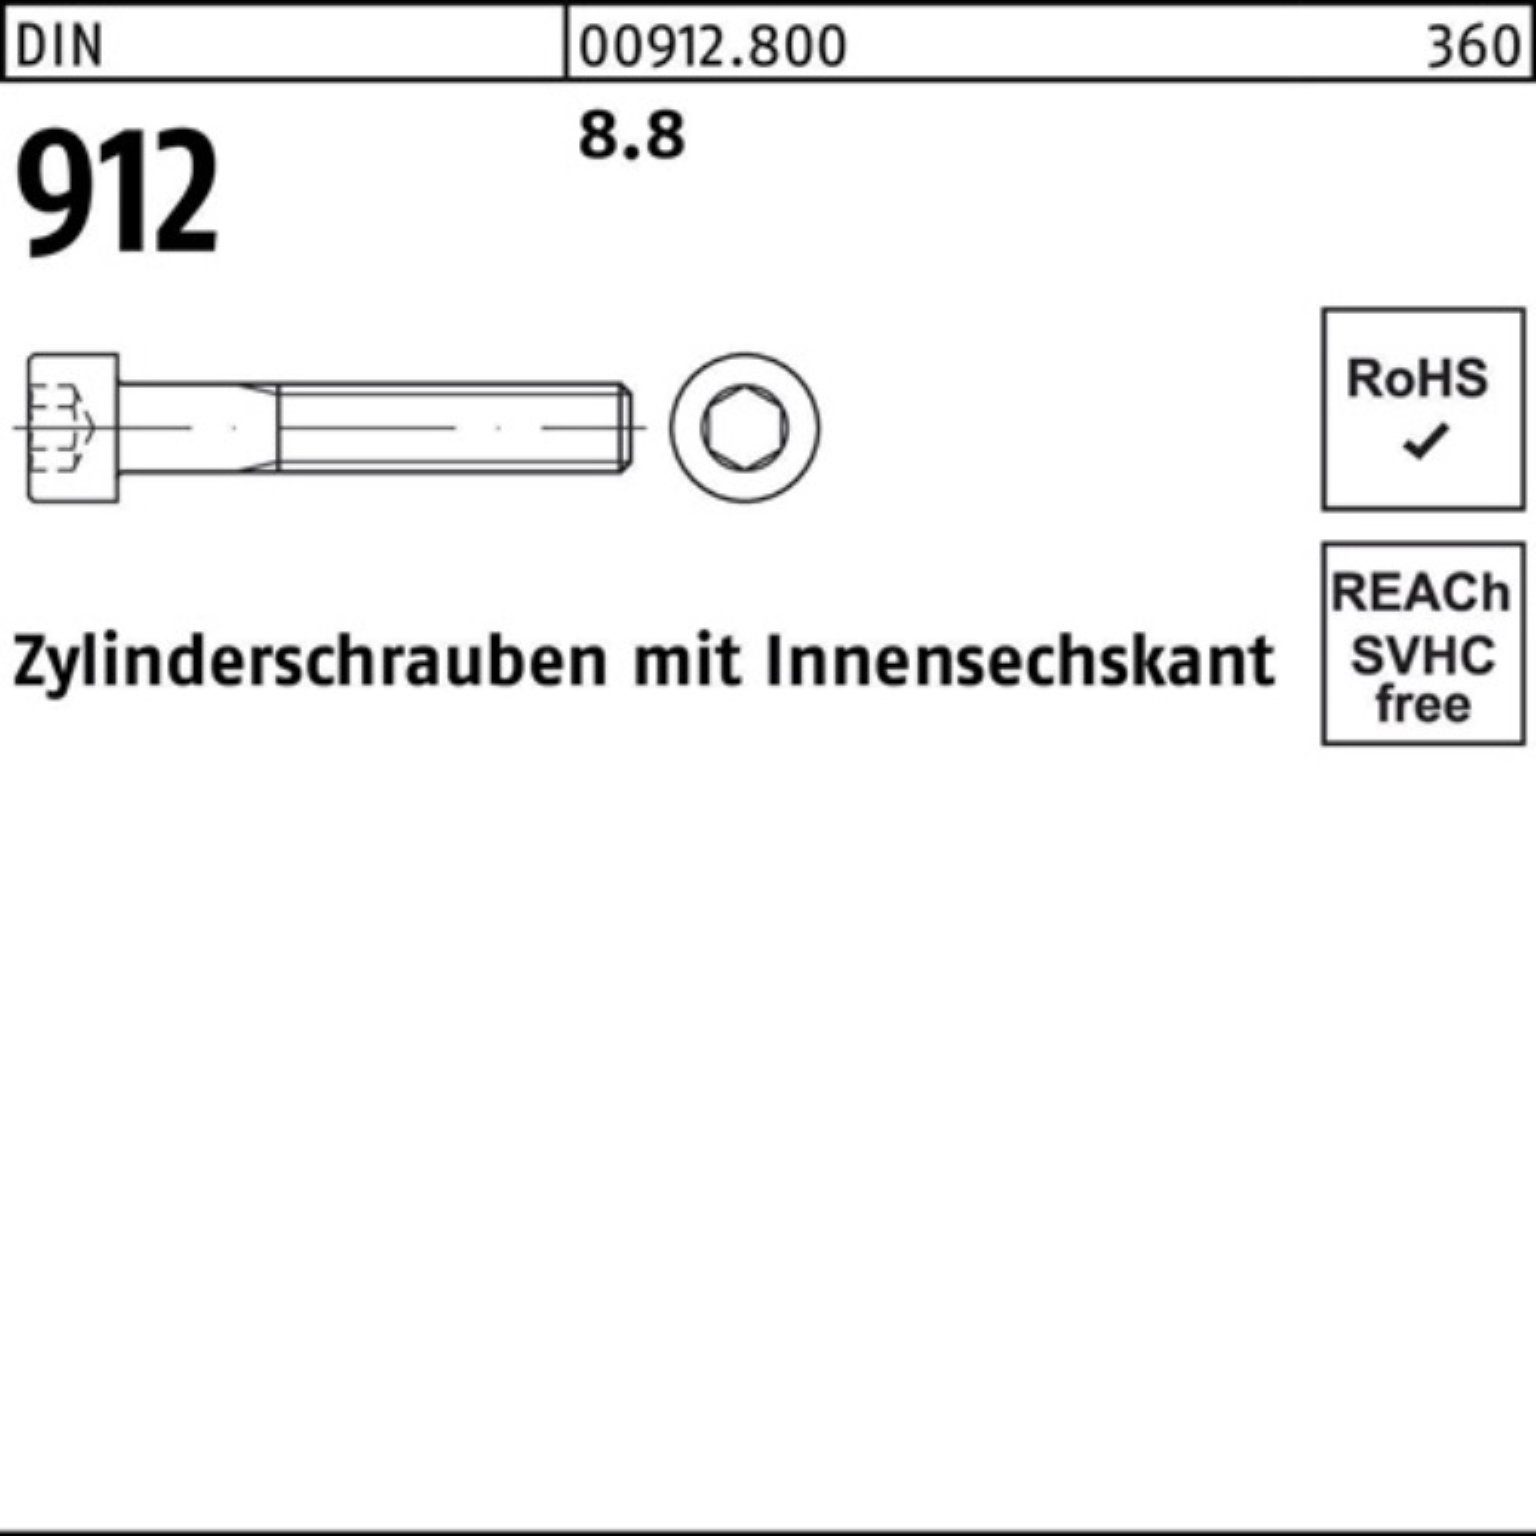 M4x Zylinderschraube Zylinderschraube 8.8 70 Reyher Innen-6kt DIN 100er 912 Stück 100 DI Pack